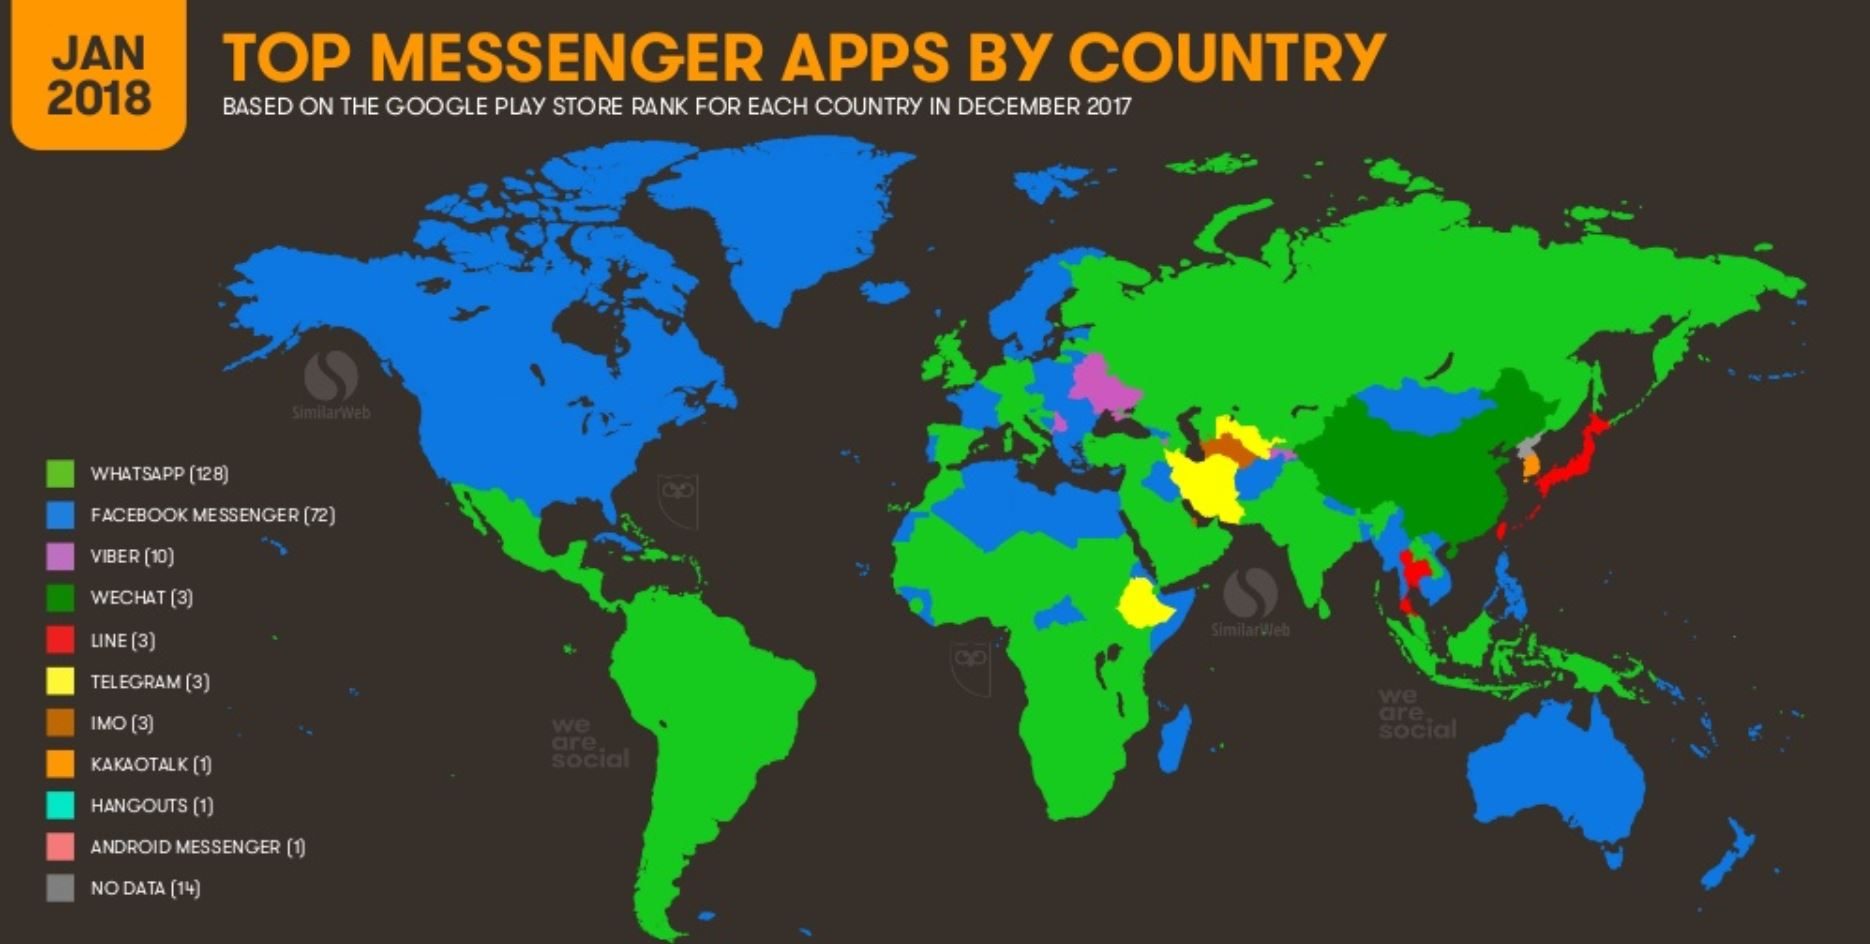 La carte mondiale des messageries les plus utilisées par pays.